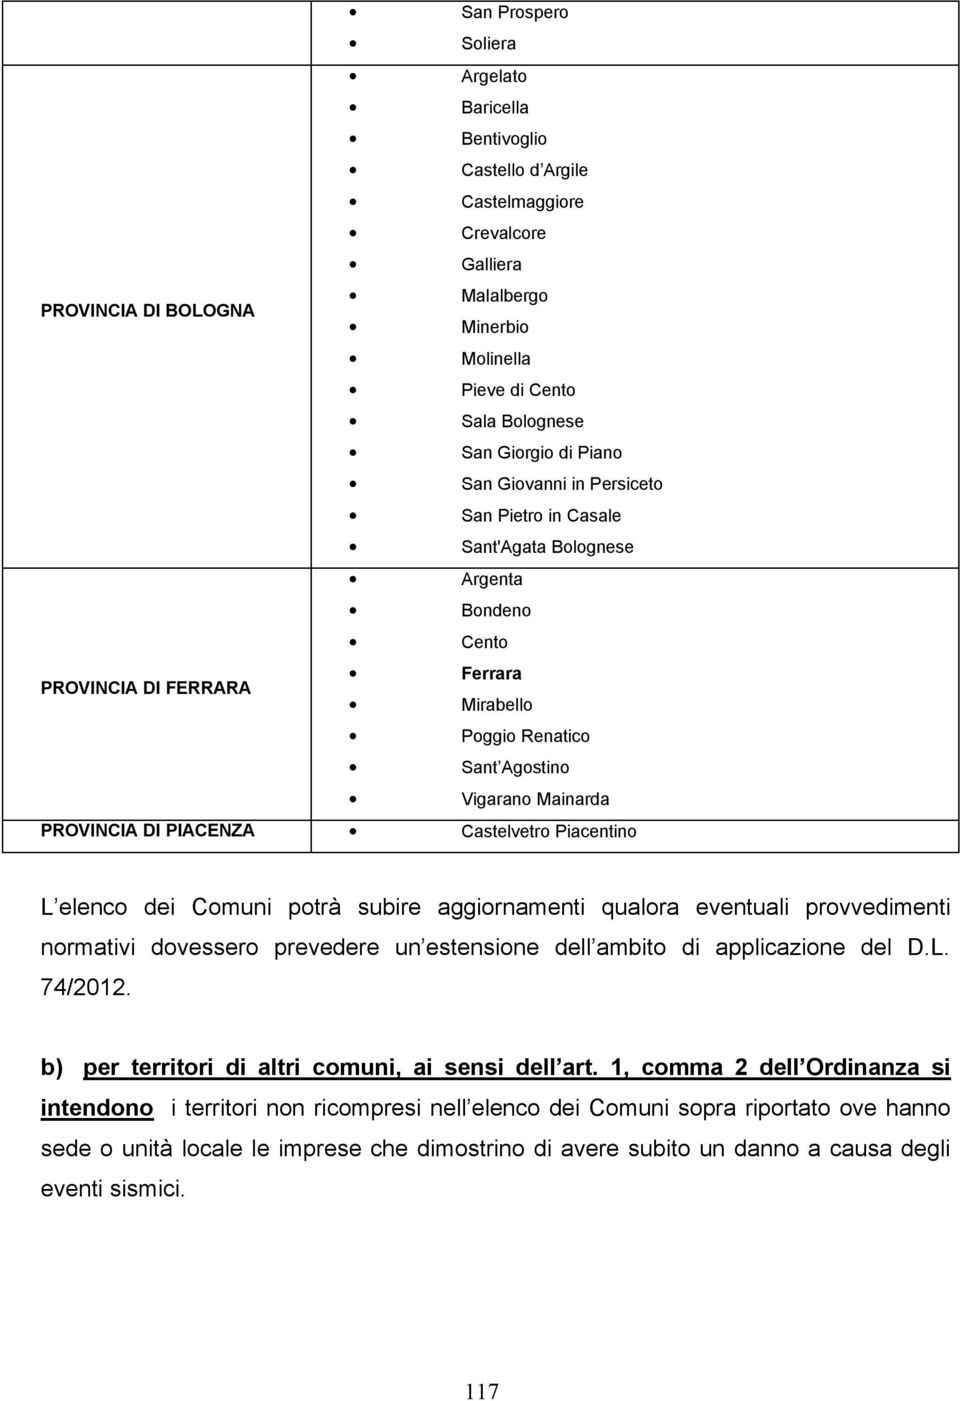 PIACENZA Castelvetro Piacentino L elenco dei Comuni potrà subire aggiornamenti qualora eventuali provvedimenti normativi dovessero prevedere un estensione dell ambito di applicazione del D.L. 74/2012.